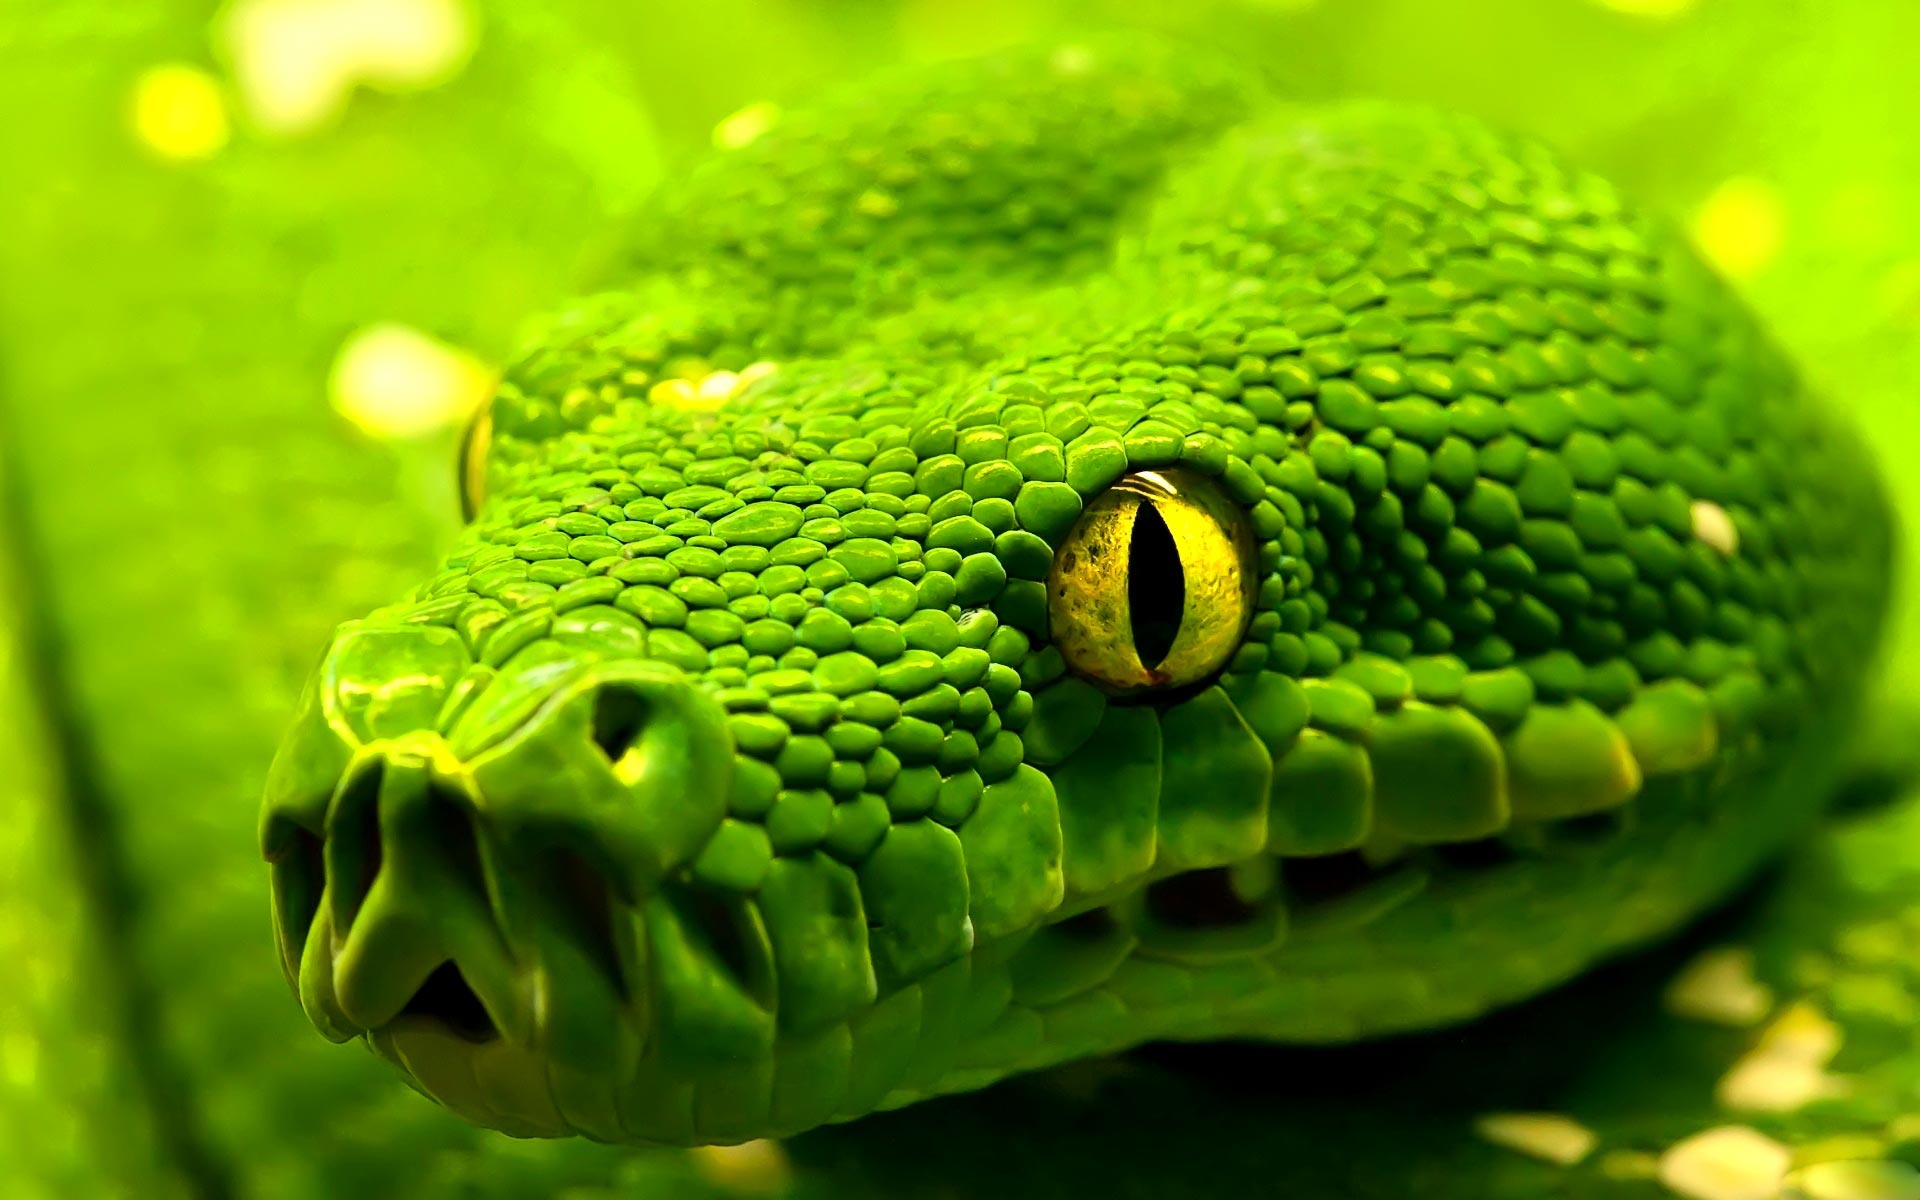 Green Snake HD Wallpaper Cool Desktop Background Image Widescreen